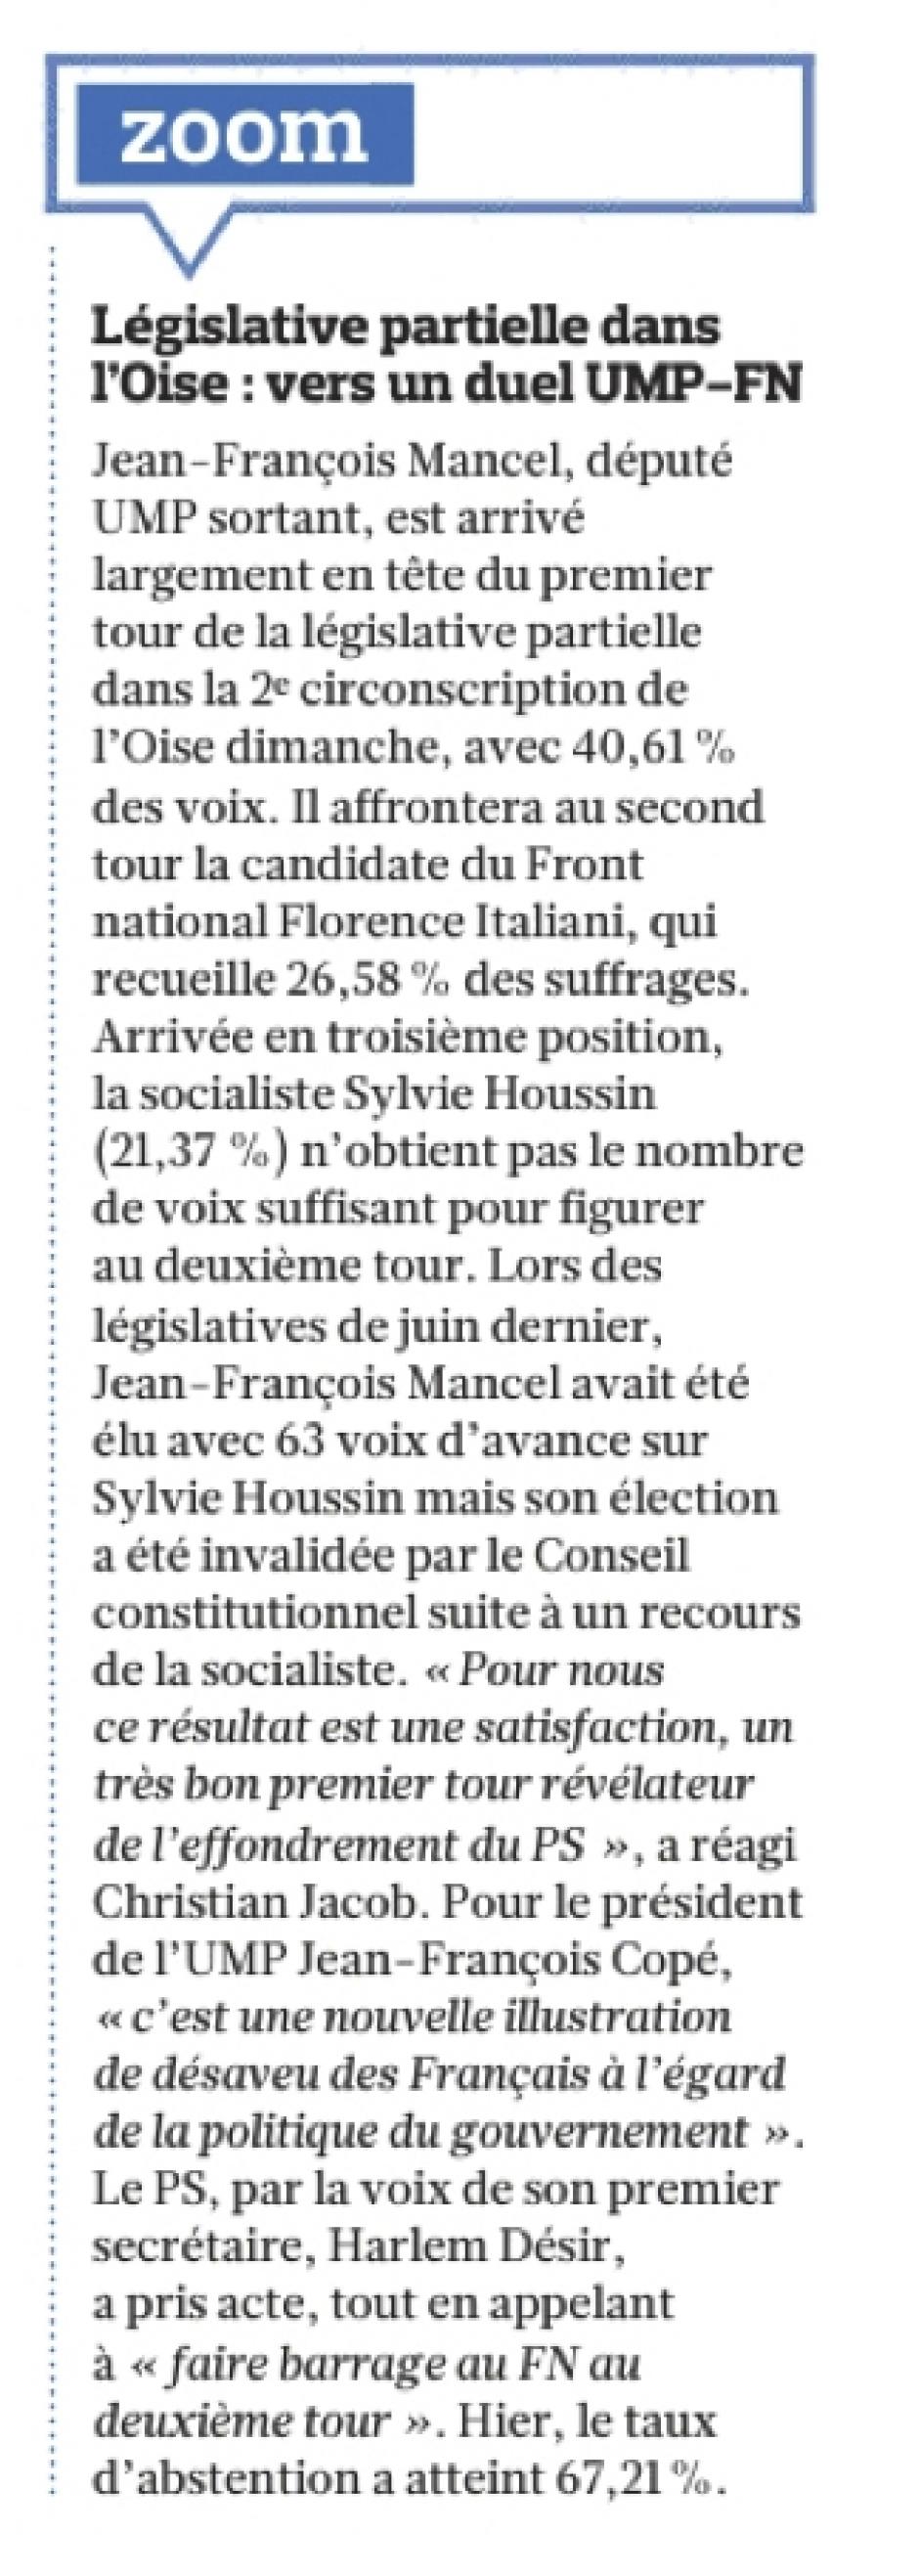 20130318-Le Figaro-2C-Législative partielle dans l'Oise : vers un duel UMP-FN